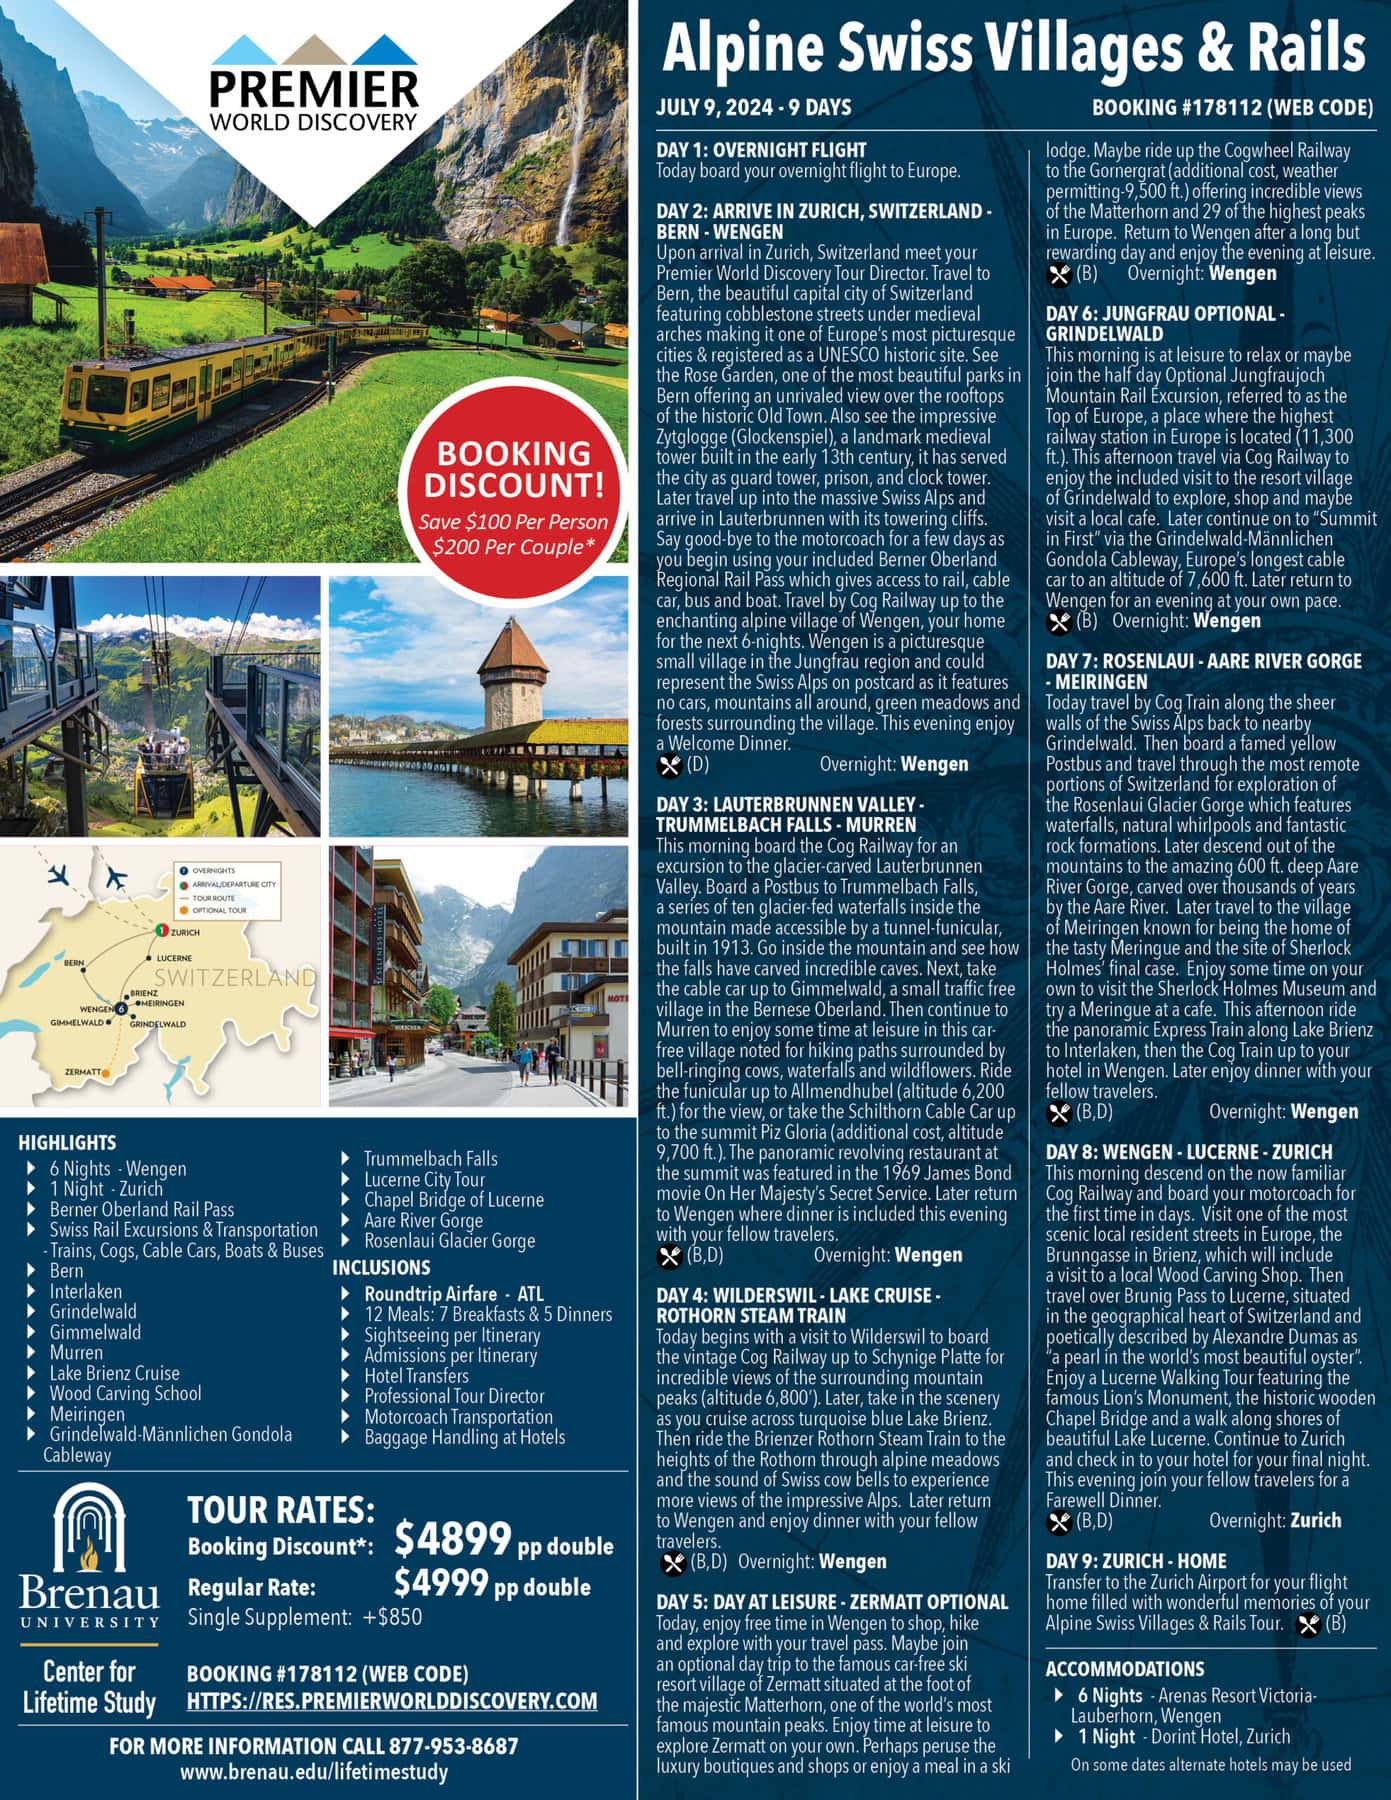 Alpine Swiss Villages & Rails Trip Flyer